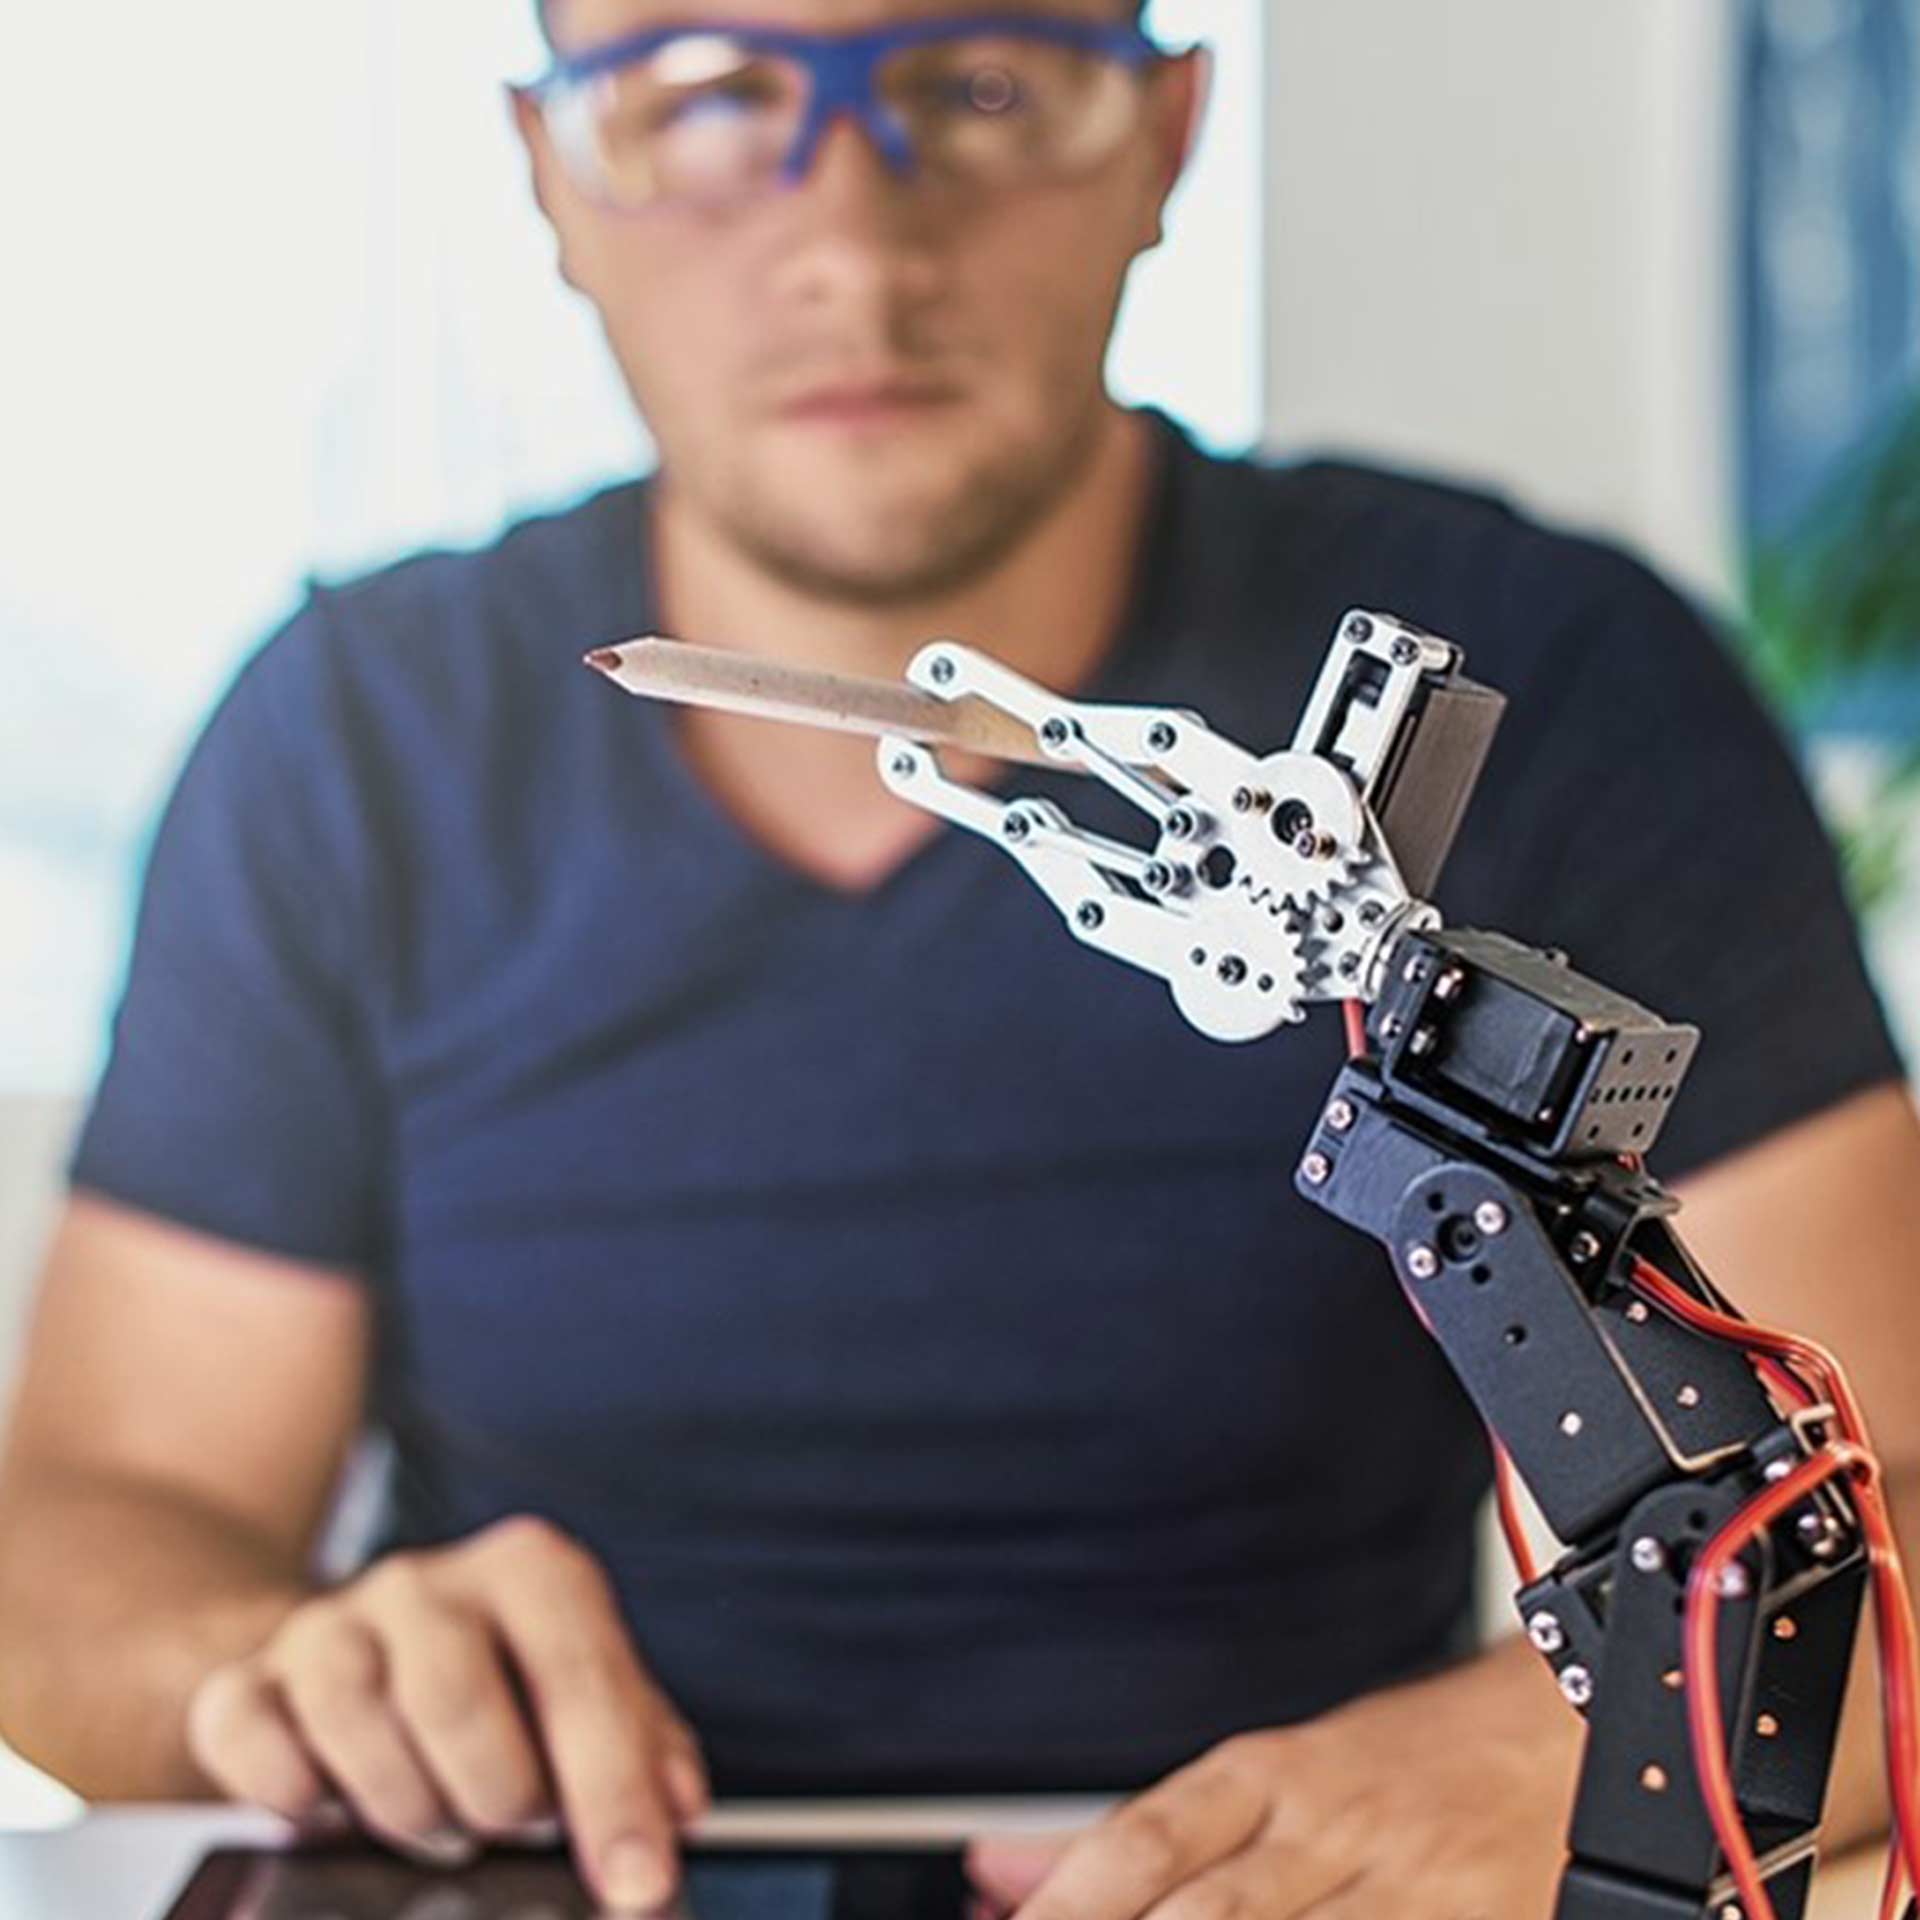 Mann mit Tablet steuert einen Roboter der einen Buntstift hält